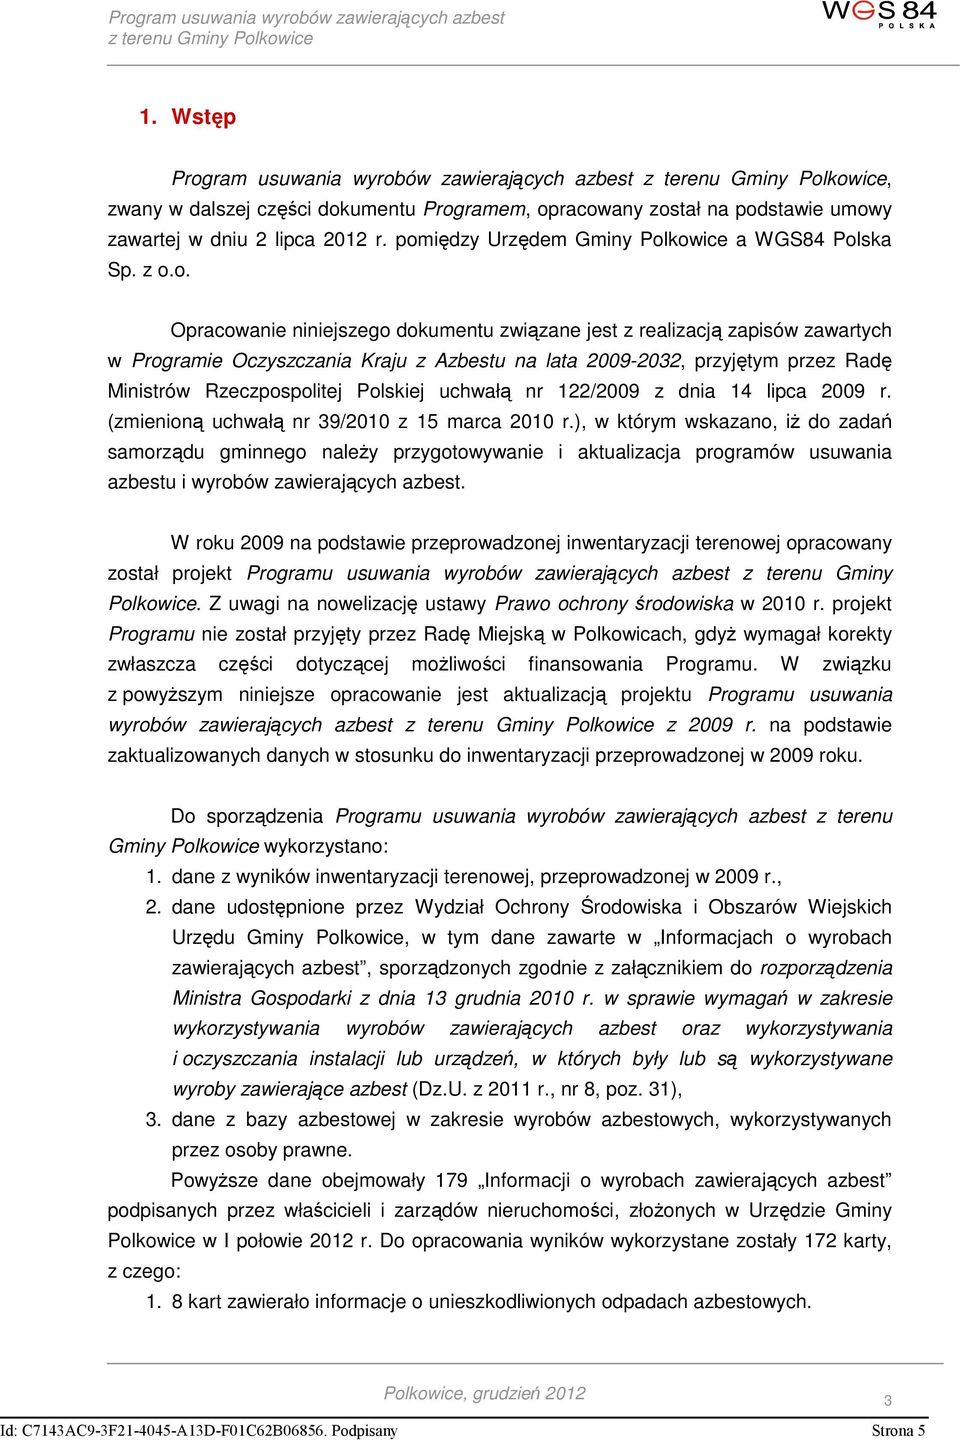 przyjętym przez Radę Ministrów Rzeczpospolitej Polskiej uchwałą nr 122/2009 z dnia 14 lipca 2009 r. (zmienioną uchwałą nr 39/2010 z 15 marca 2010 r.